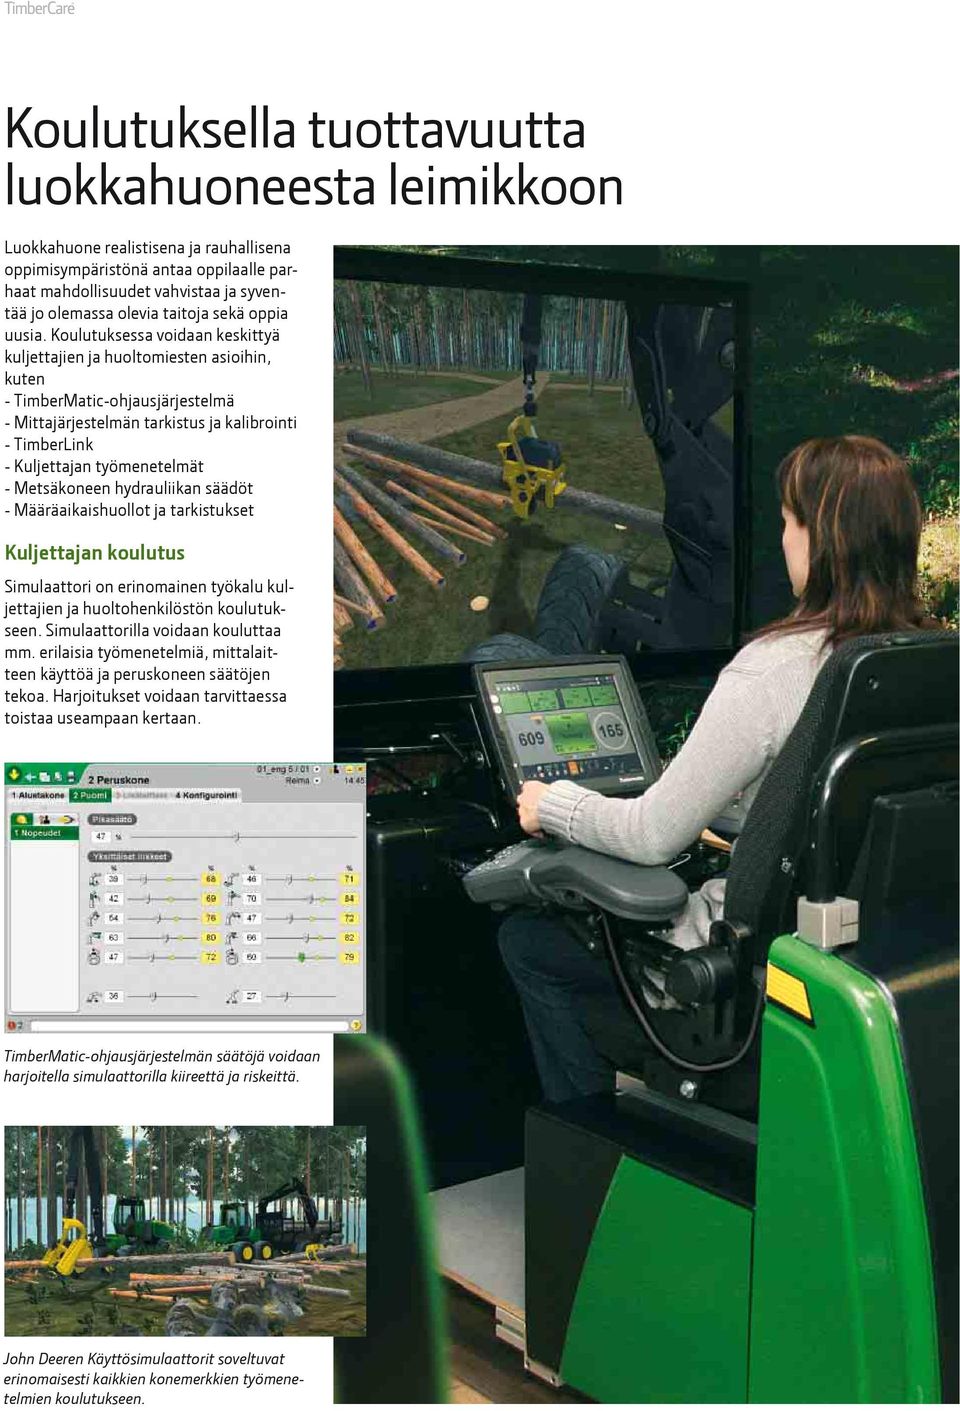 Koulutuksessa voidaan keskittyä kuljettajien ja huoltomiesten asioihin, kuten - TimberMatic-ohjausjärjestelmä - Mittajärjestelmän tarkistus ja kalibrointi - TimberLink - Kuljettajan työmenetelmät -